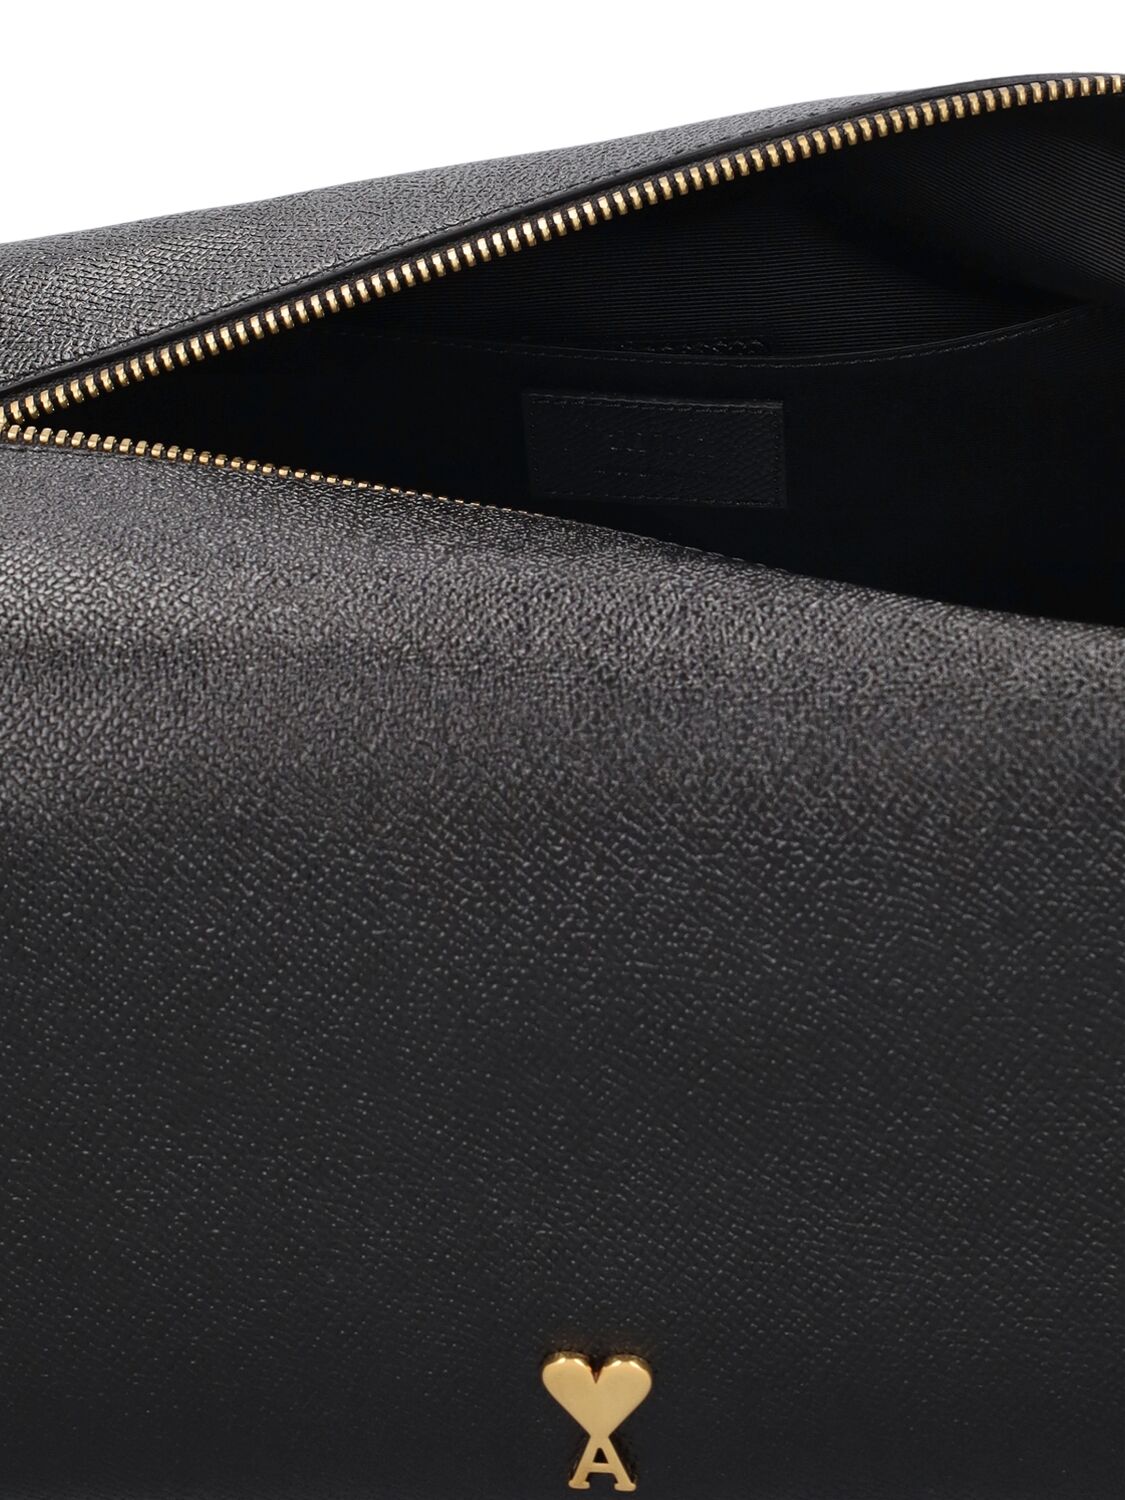 Shop Ami Alexandre Mattiussi Paris Paris Grained Leather Pouch In Black,brass